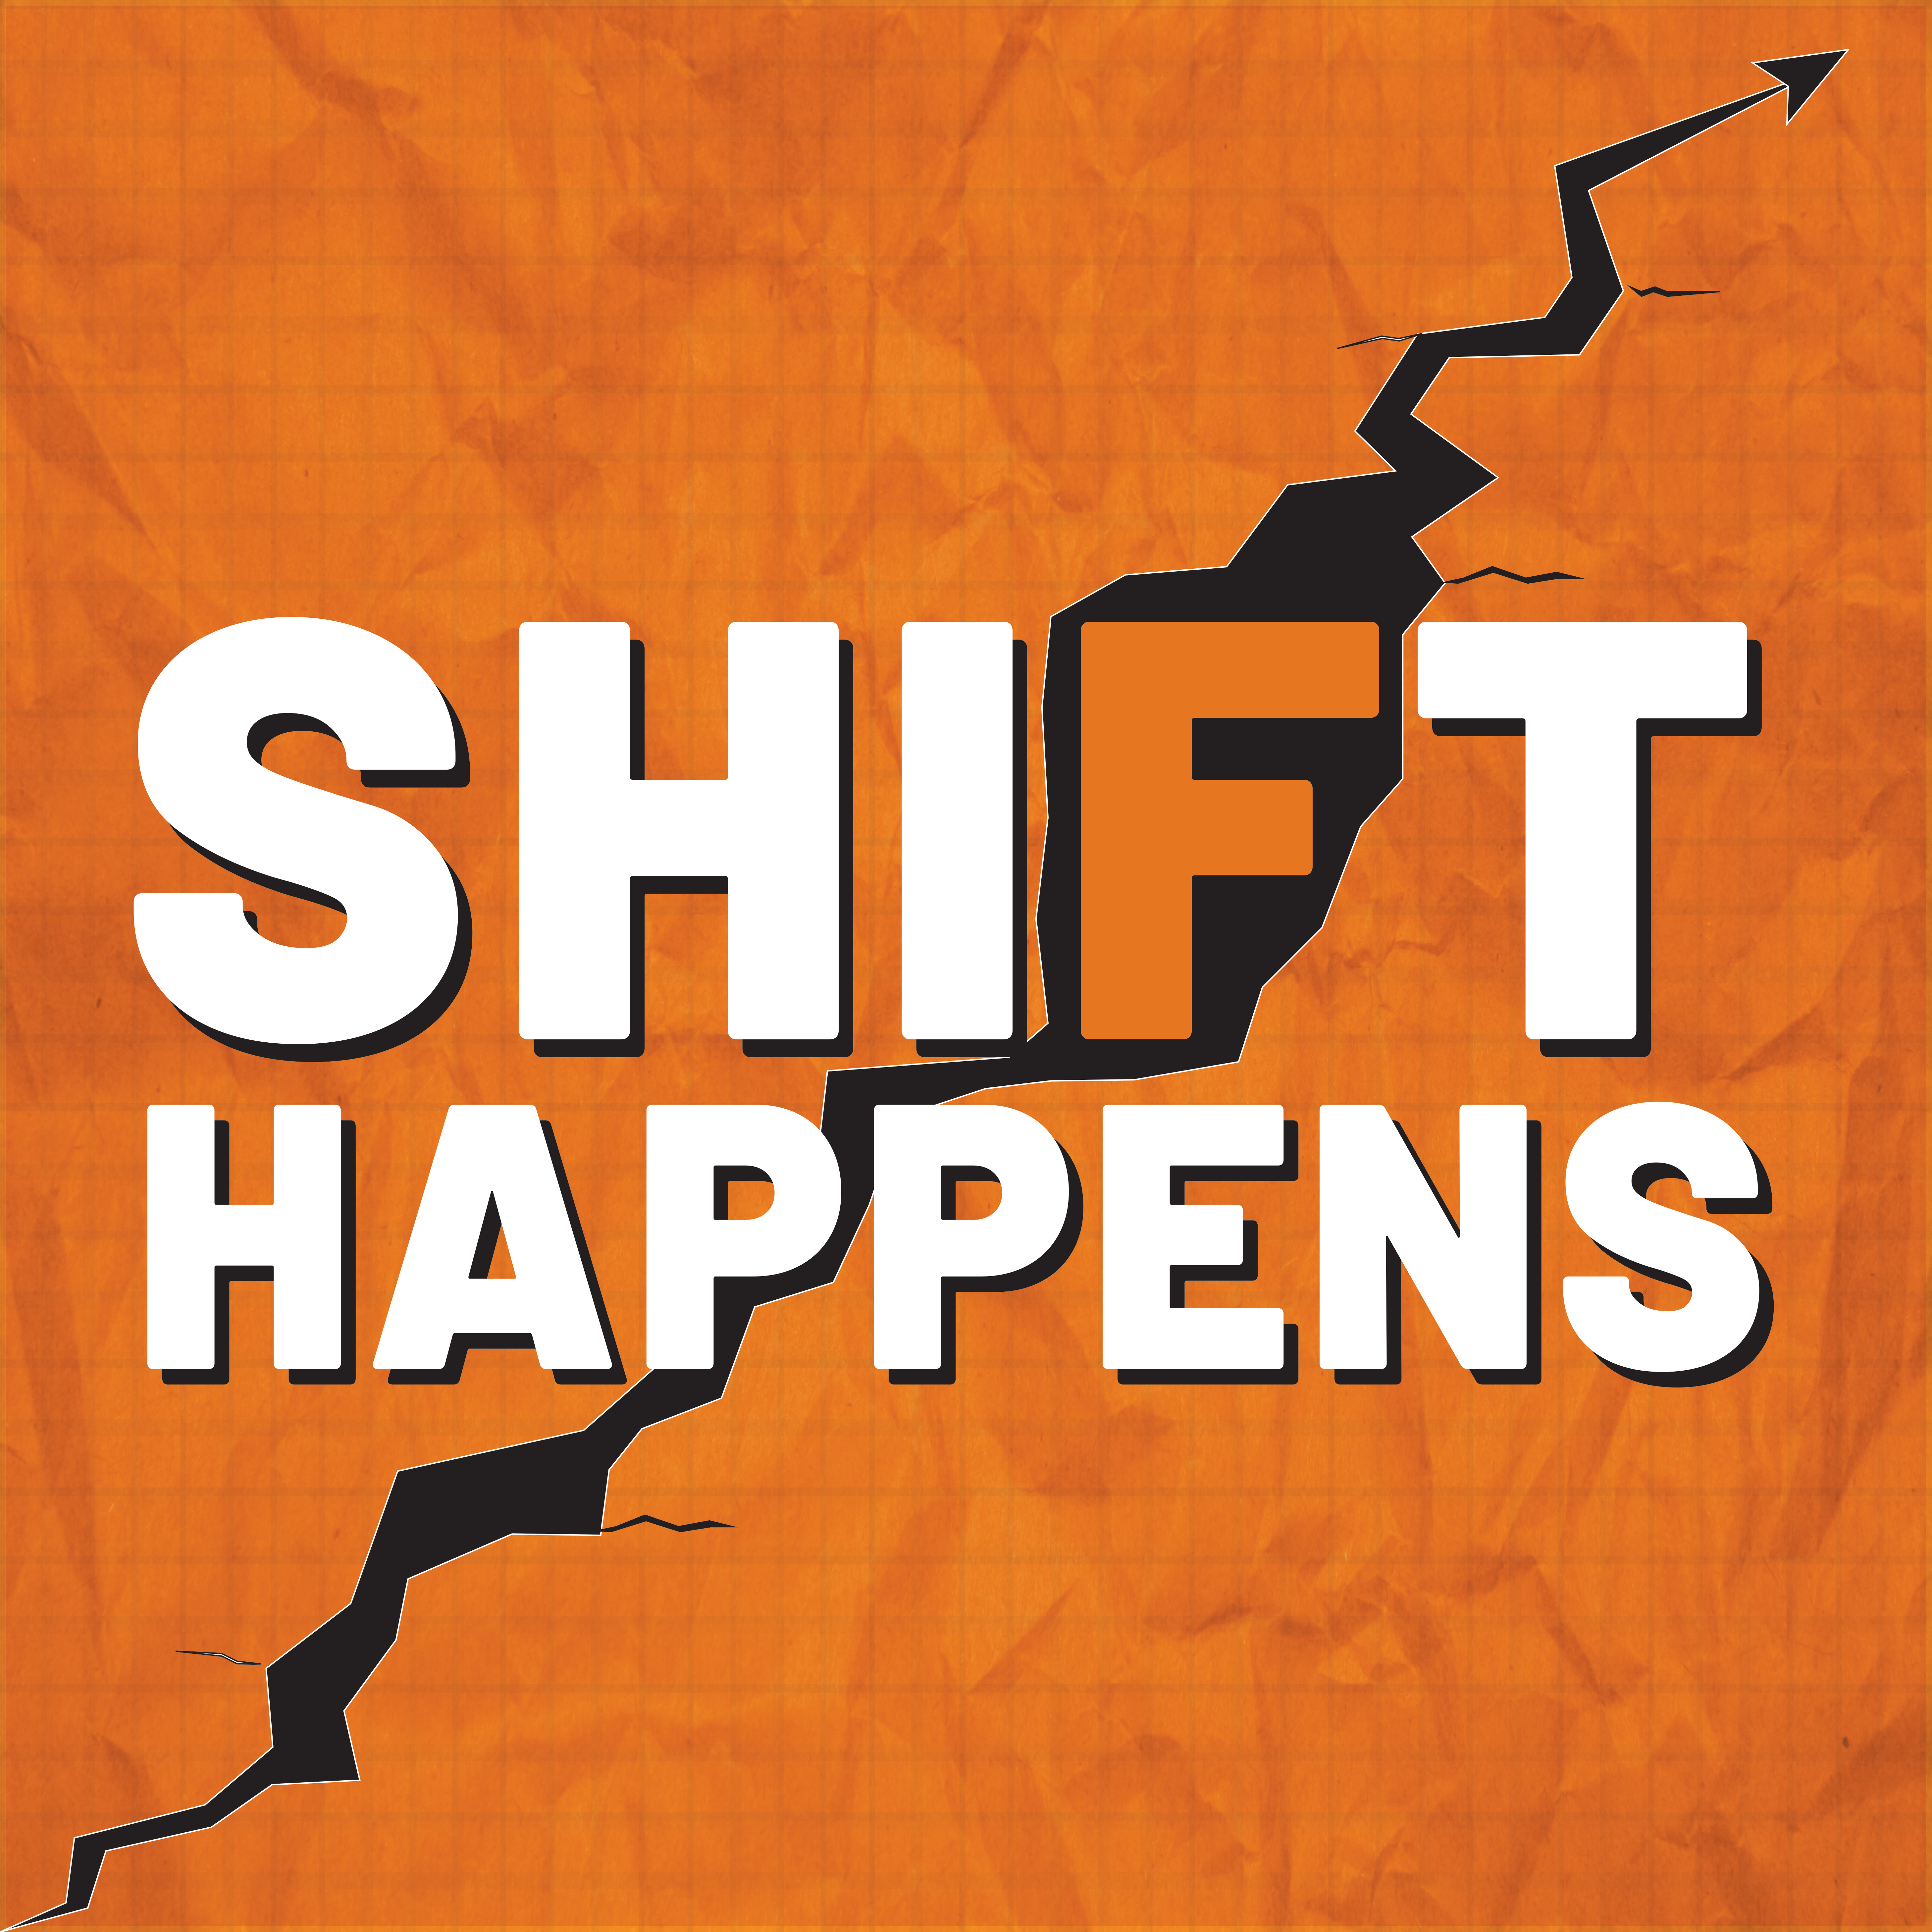 shift happen image